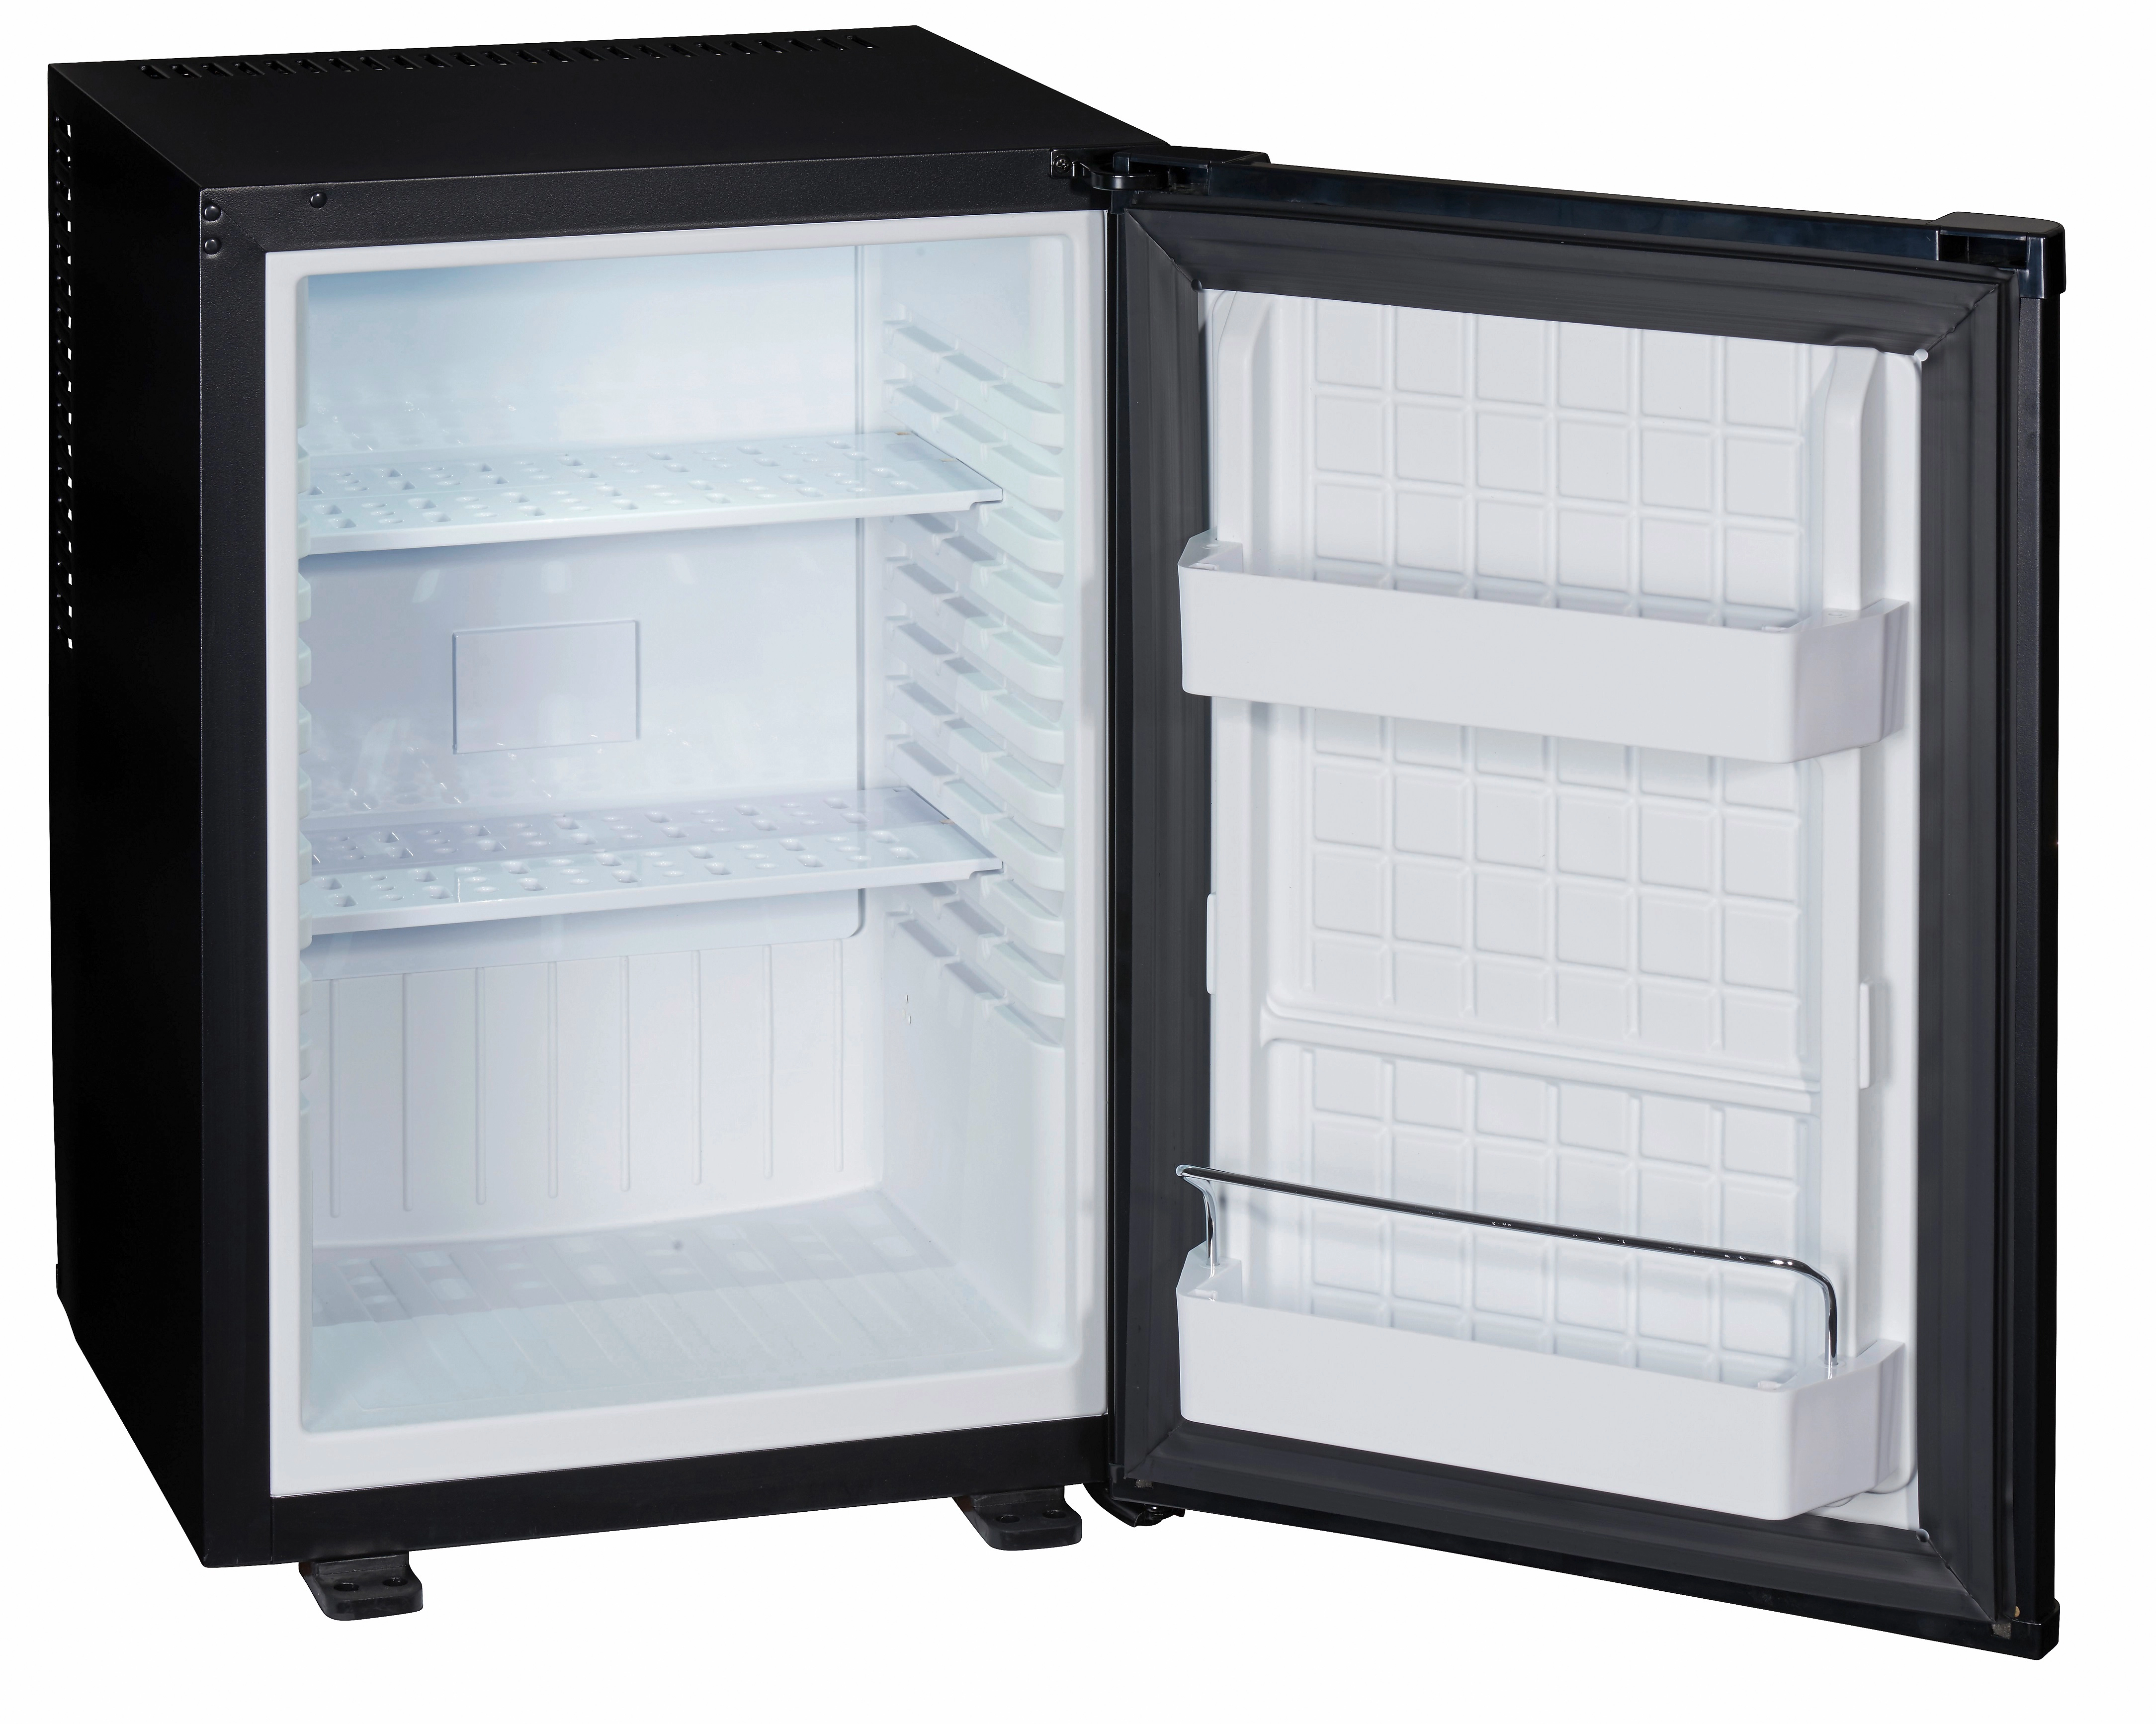 Mini-Kühlschrank für Ihre Minibar